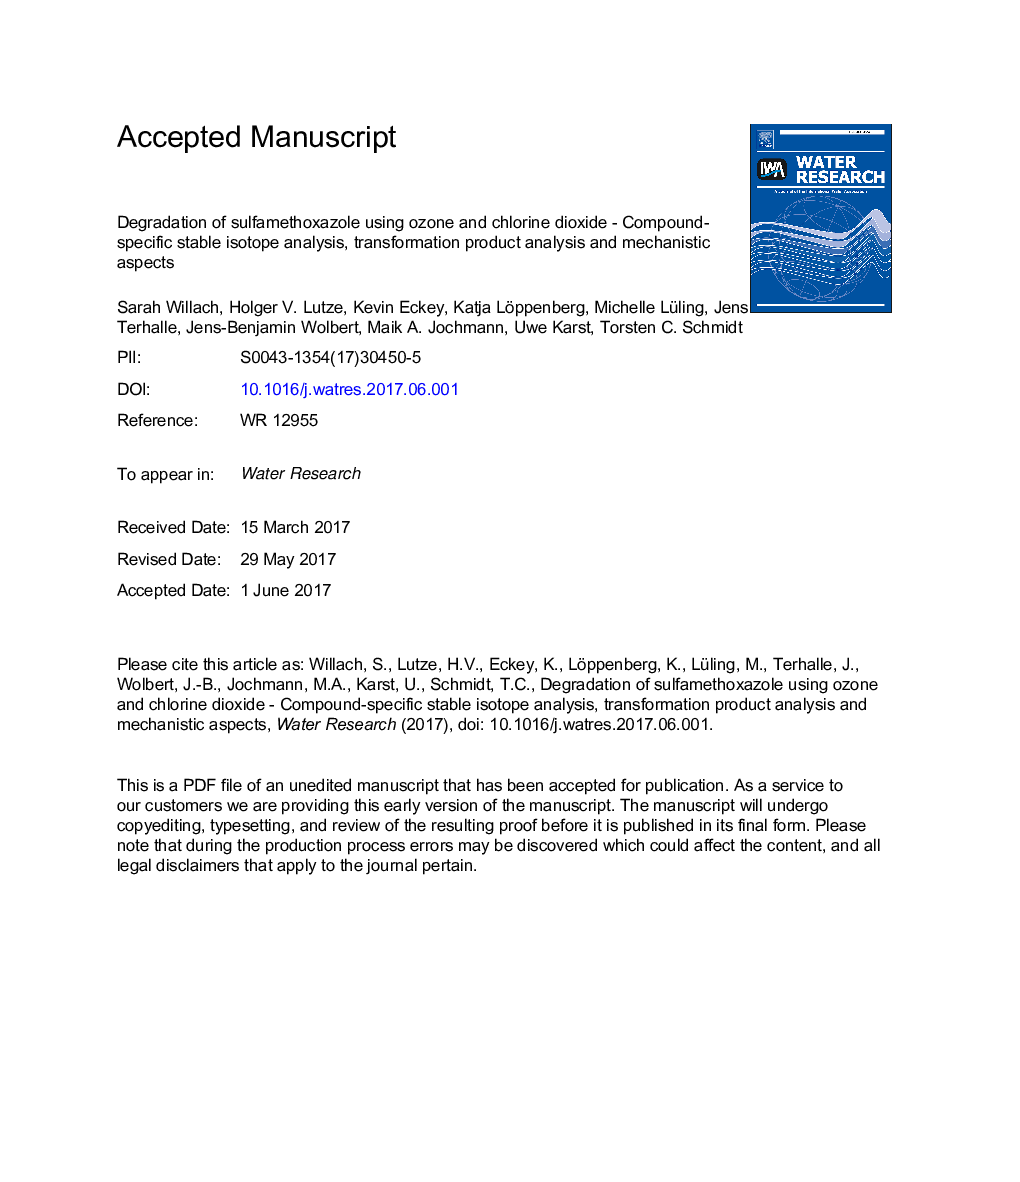 تجزیه سولفامتوکسازول با استفاده از ازن و دی اکسید کلر - تجزیه و تحلیل ایزوتوپ پایدار با ترکیب خاص، تجزیه و تحلیل محصول تحول و جنبه های مکانیکی 